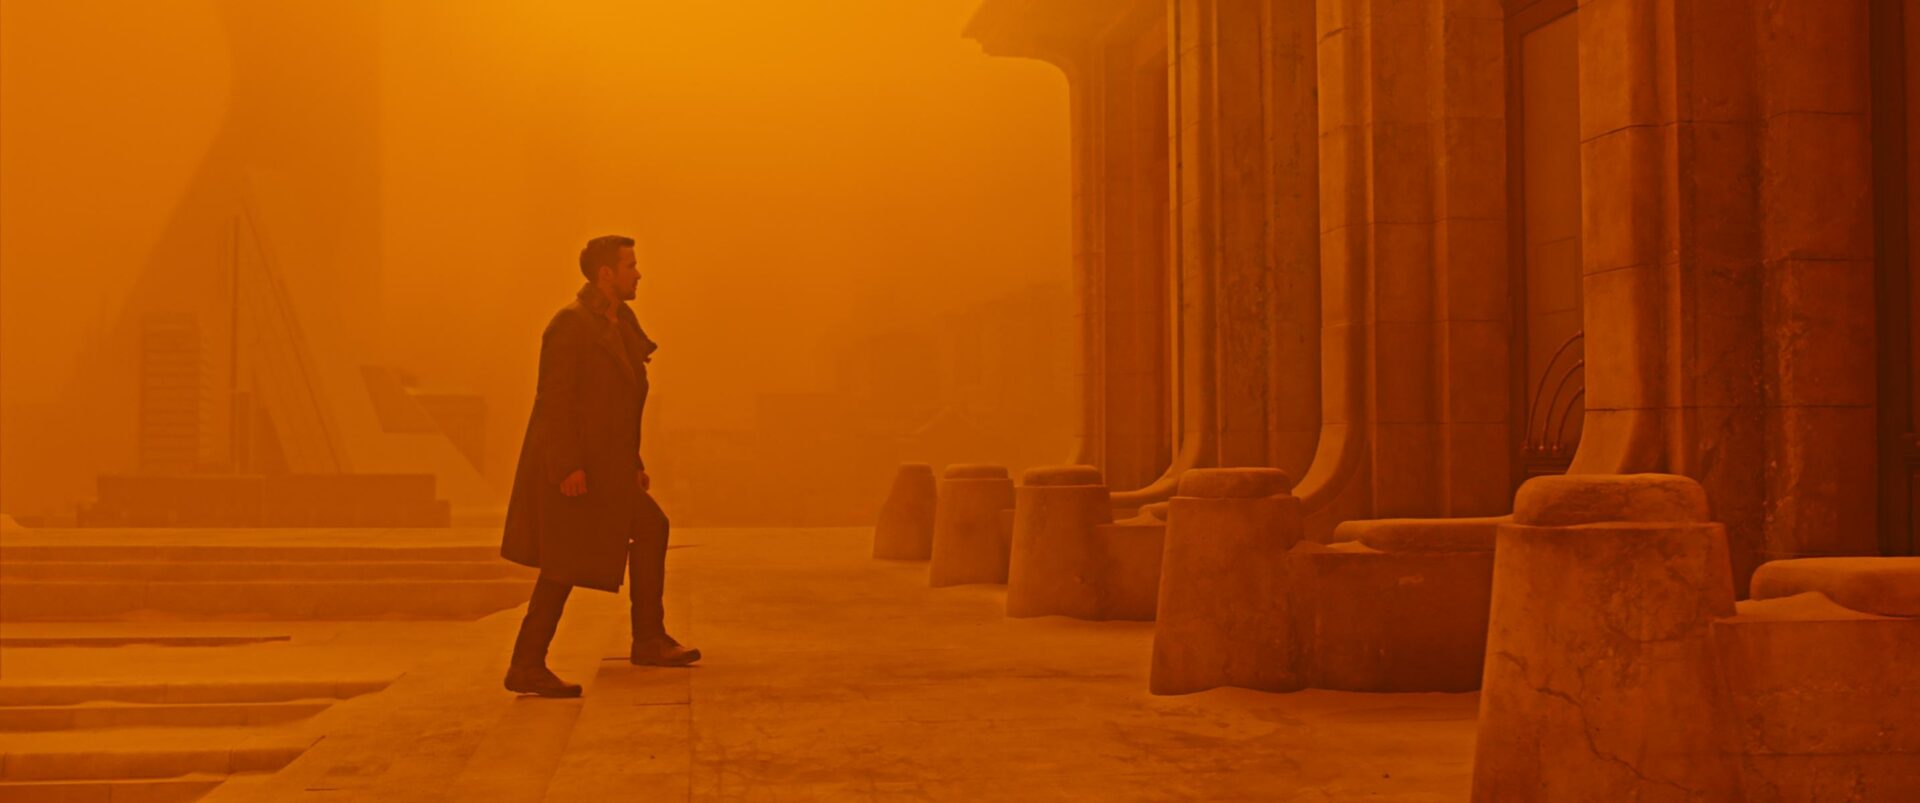 Blade Runner 2049: Auf dem Bild ist ein Mann zu sehen, der gerade ein paar Treppen hinauf zu einem Gebäude geht. Das Ganze Bild ist in gelb orange Tönen